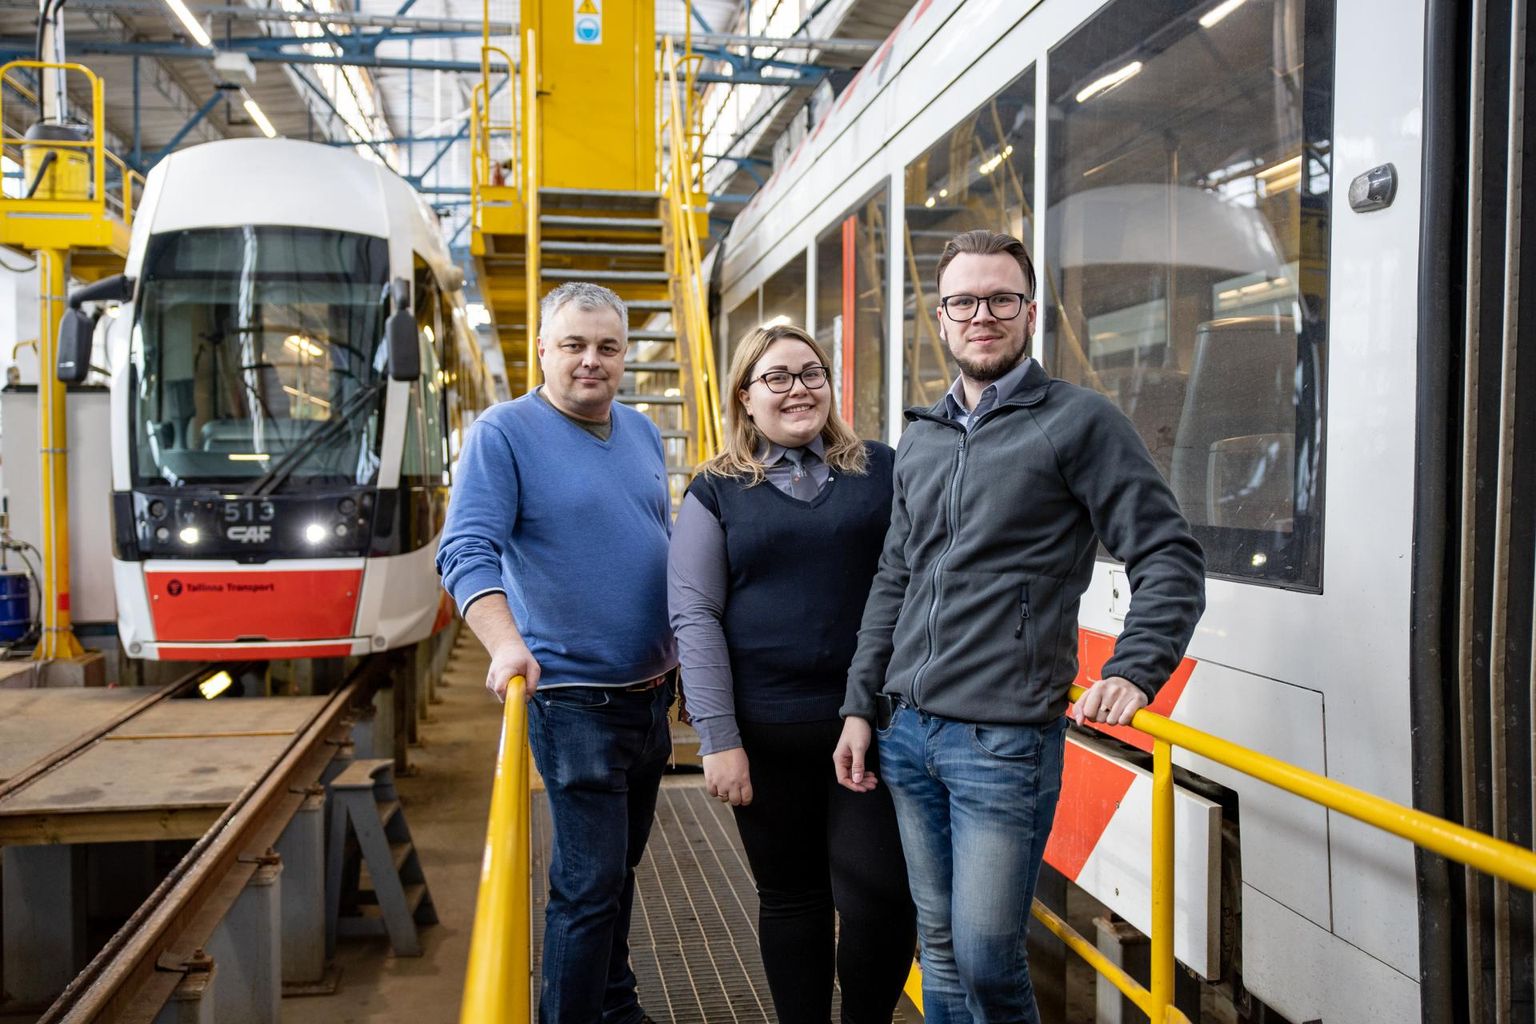 Начальник службы электротранспорта TLT Александр Мартыненко и водители трамваев Карина и Пент в трамвайном депо.